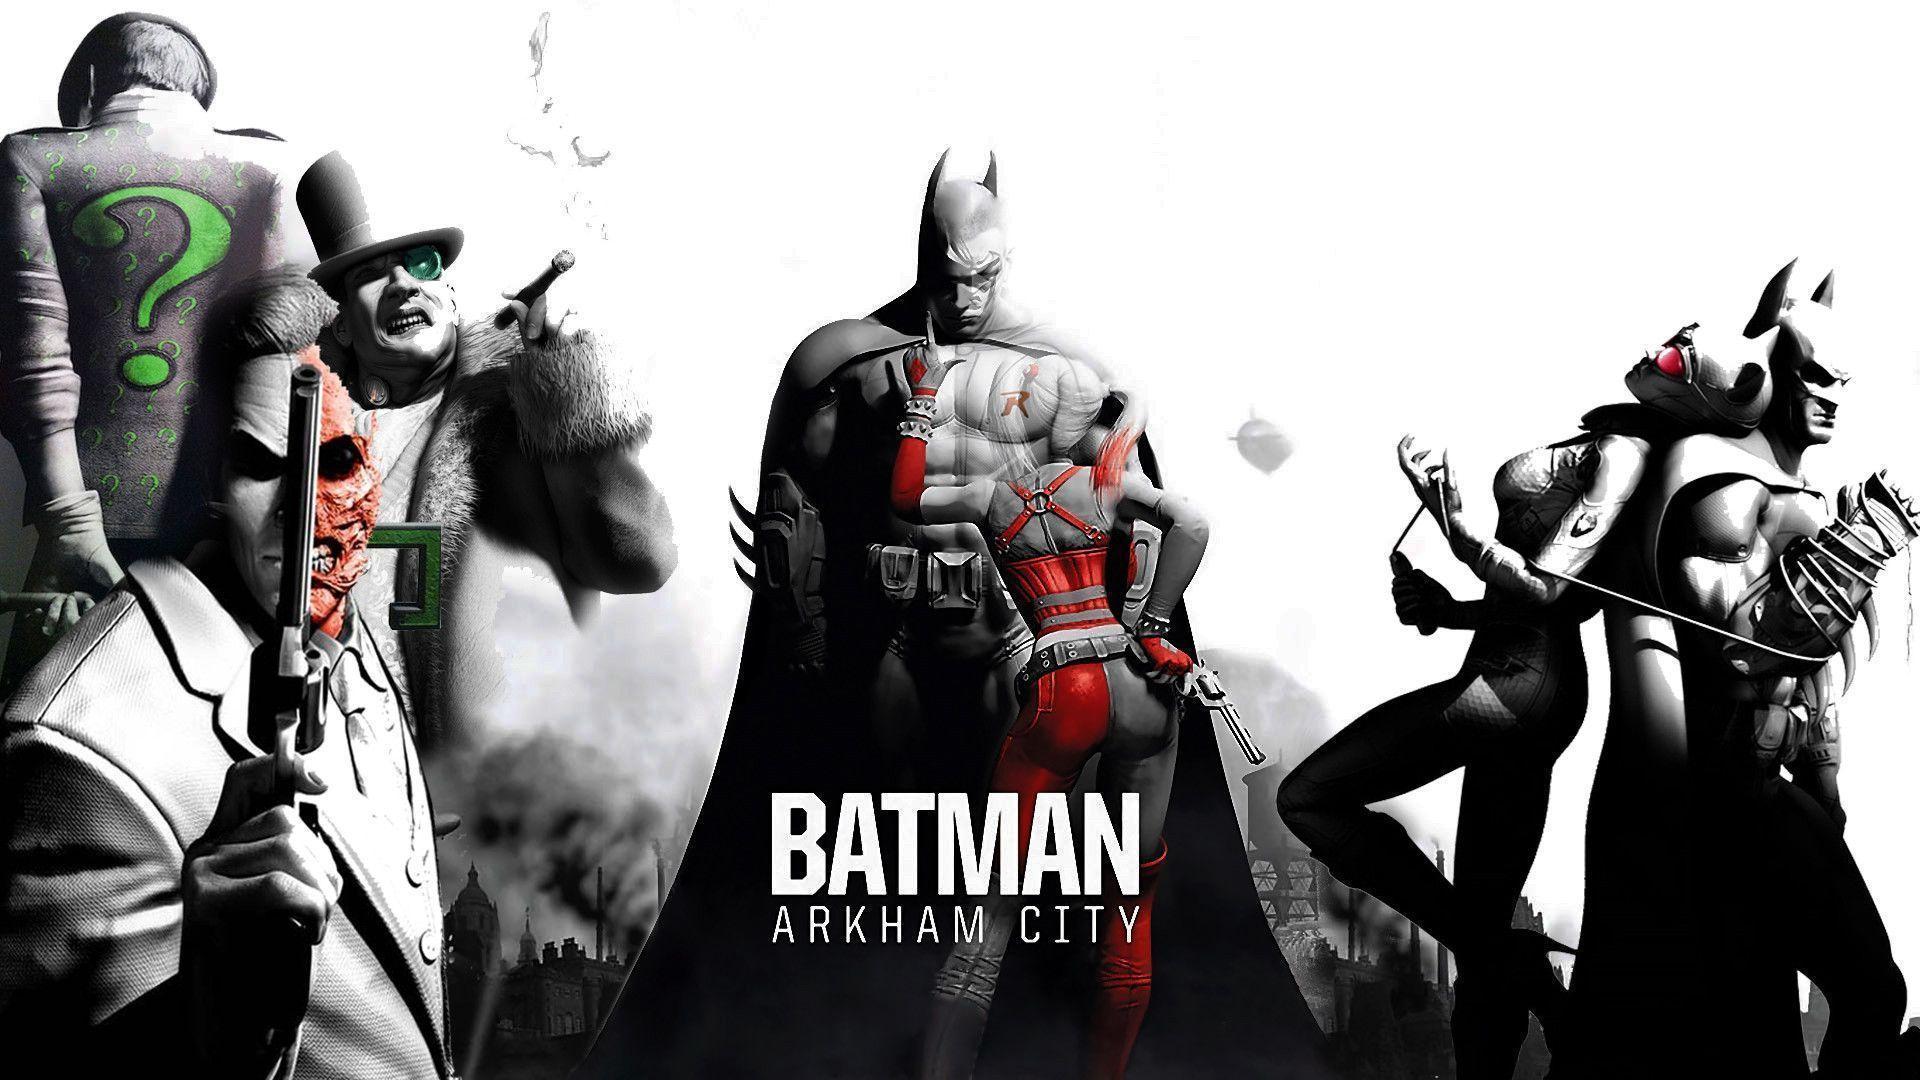 Batman Arkham City Wallpapers HD - Wallpaper Cave
